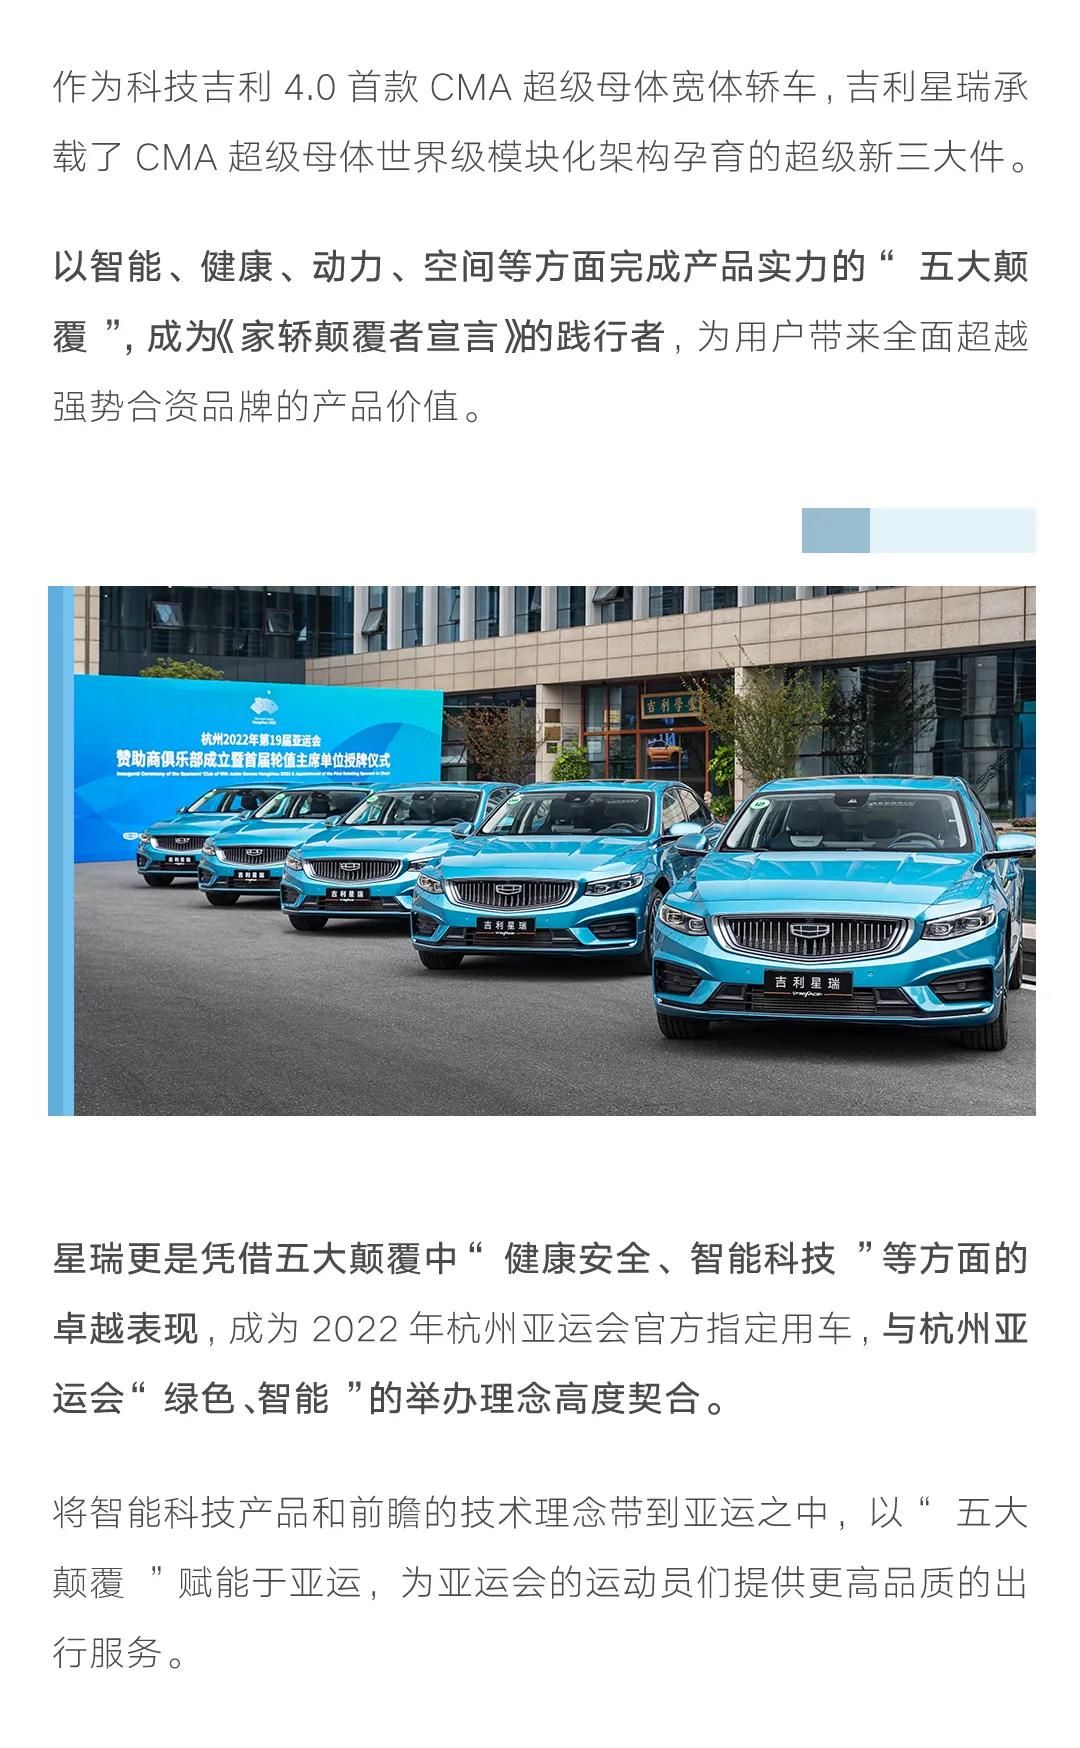 展现中国智造的向上力量——“亚运同款”吉利星瑞轿车对比试驾抢订火热进行中